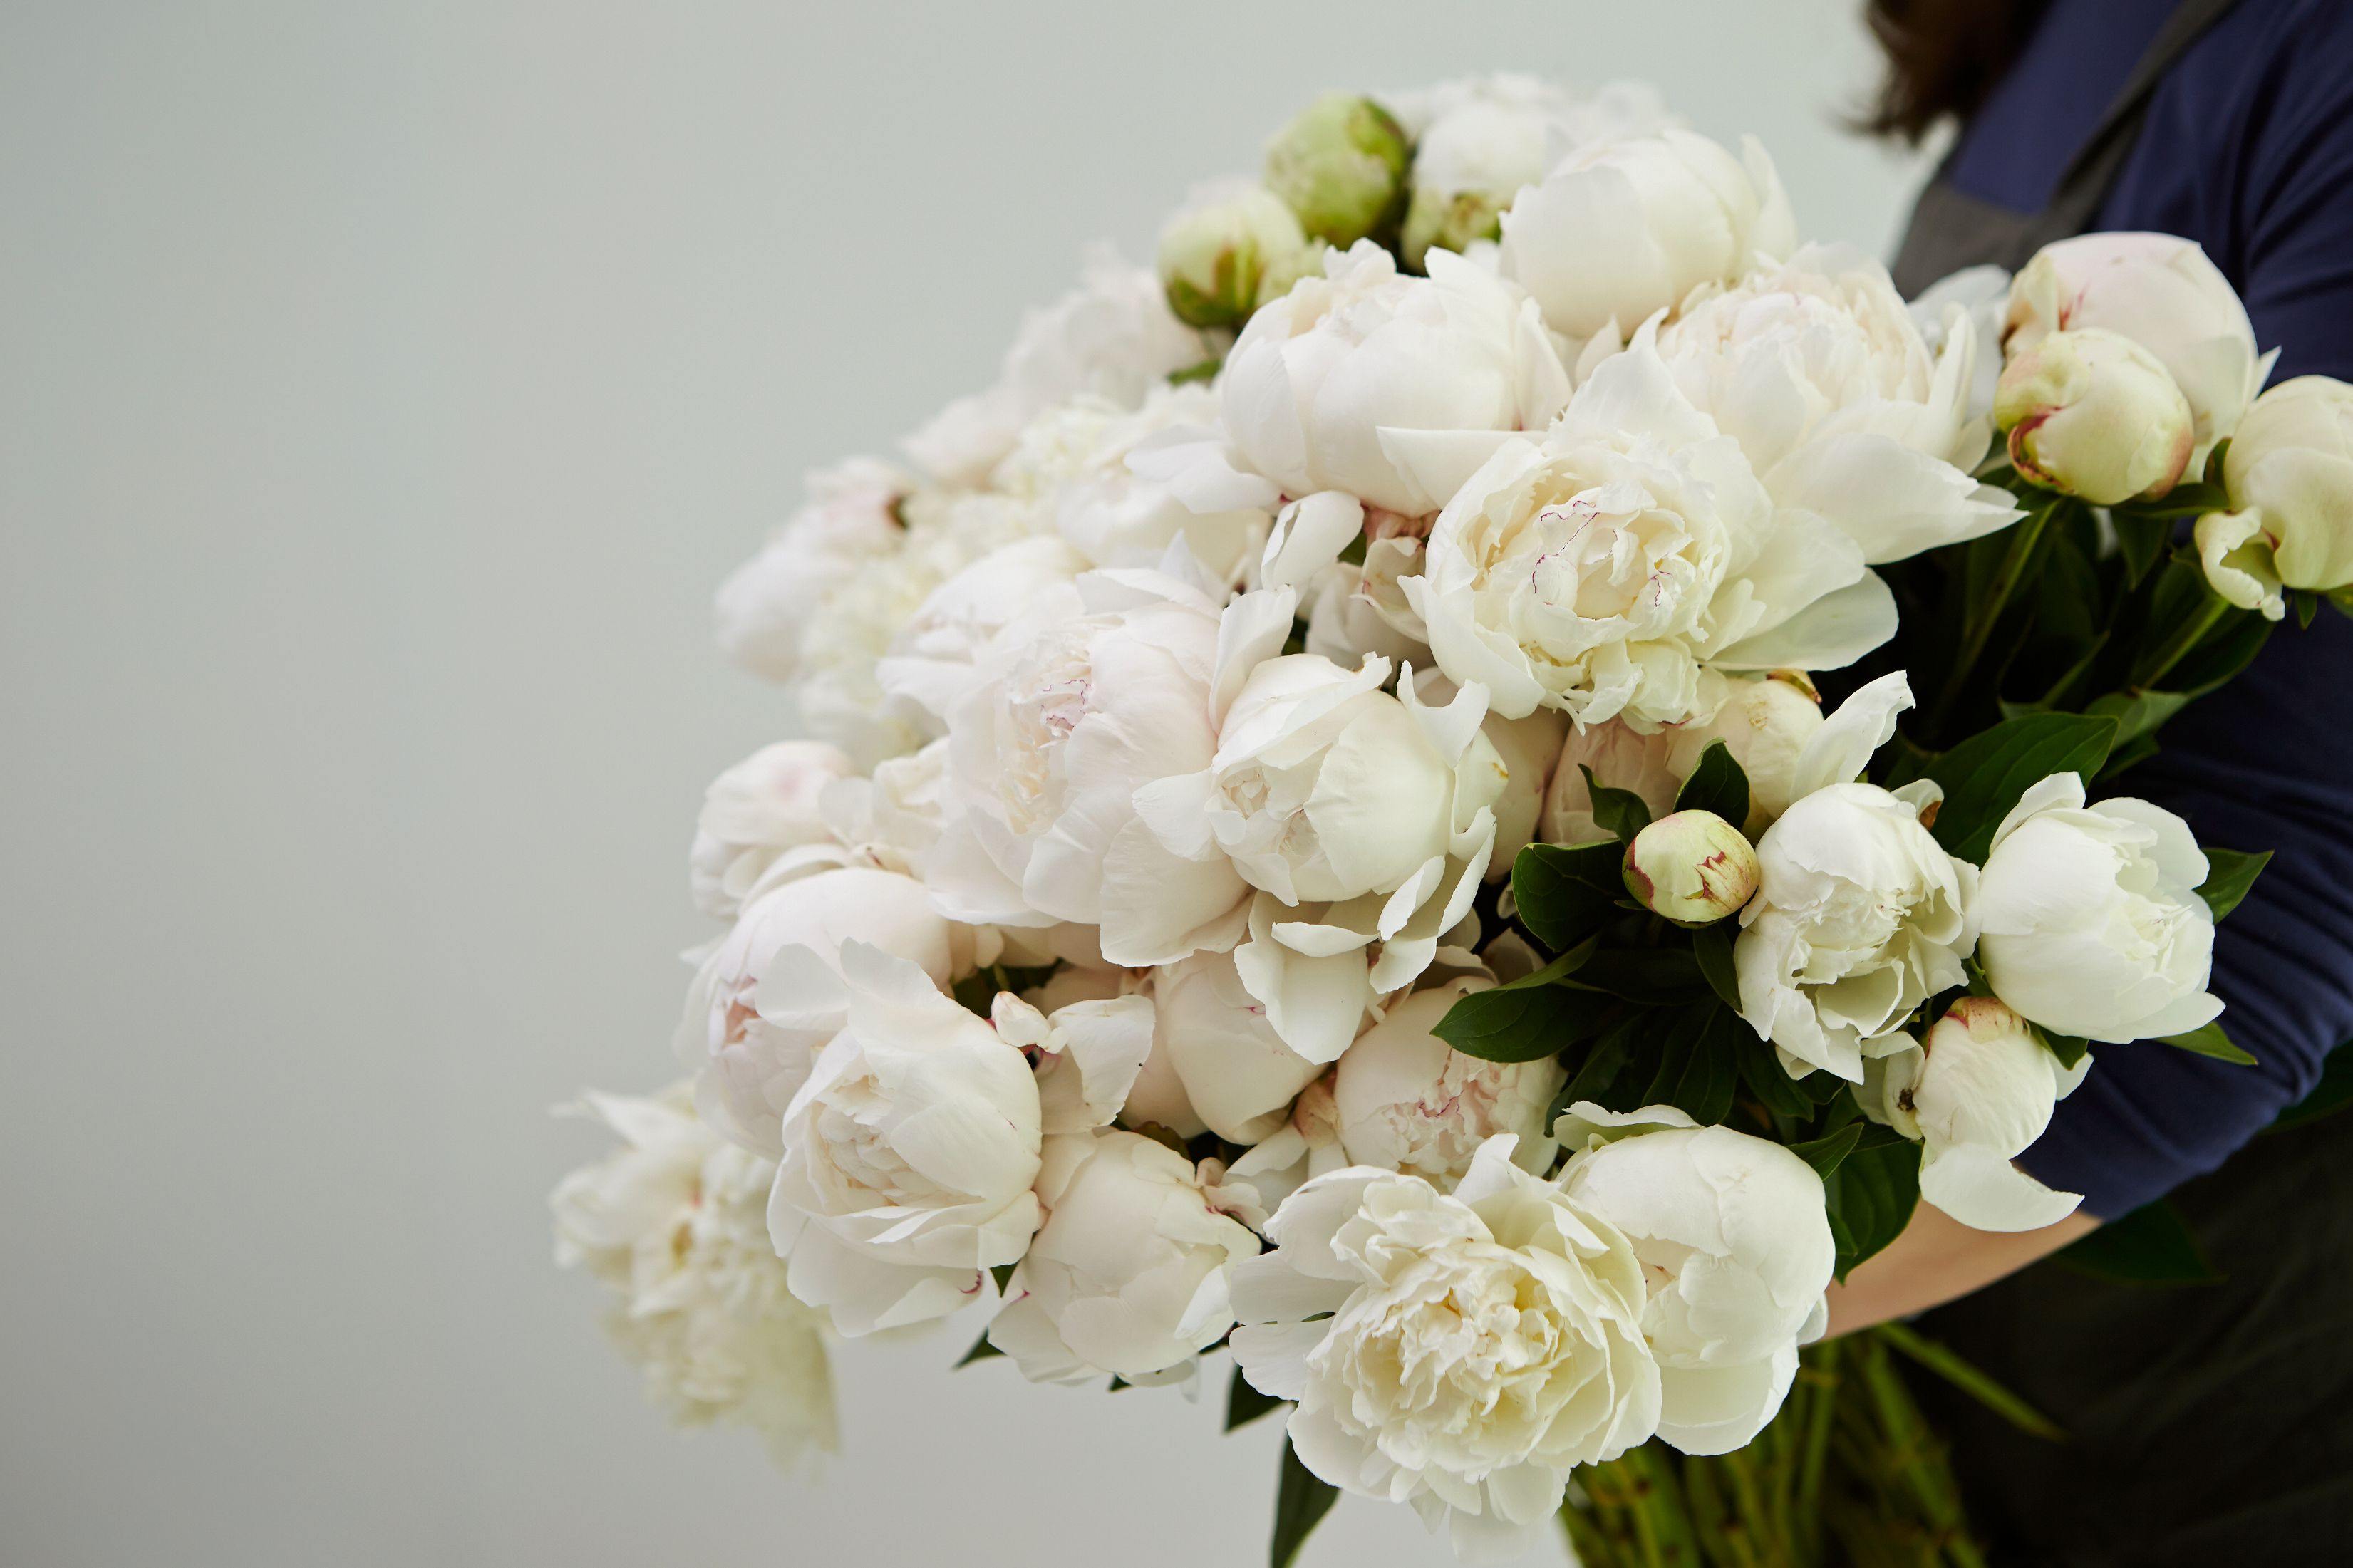 Buchete de flori albe: semnificatie si idei de buchete potrivite pentru diverse ocazii - = California Flowers, Bucuresti si Brasov